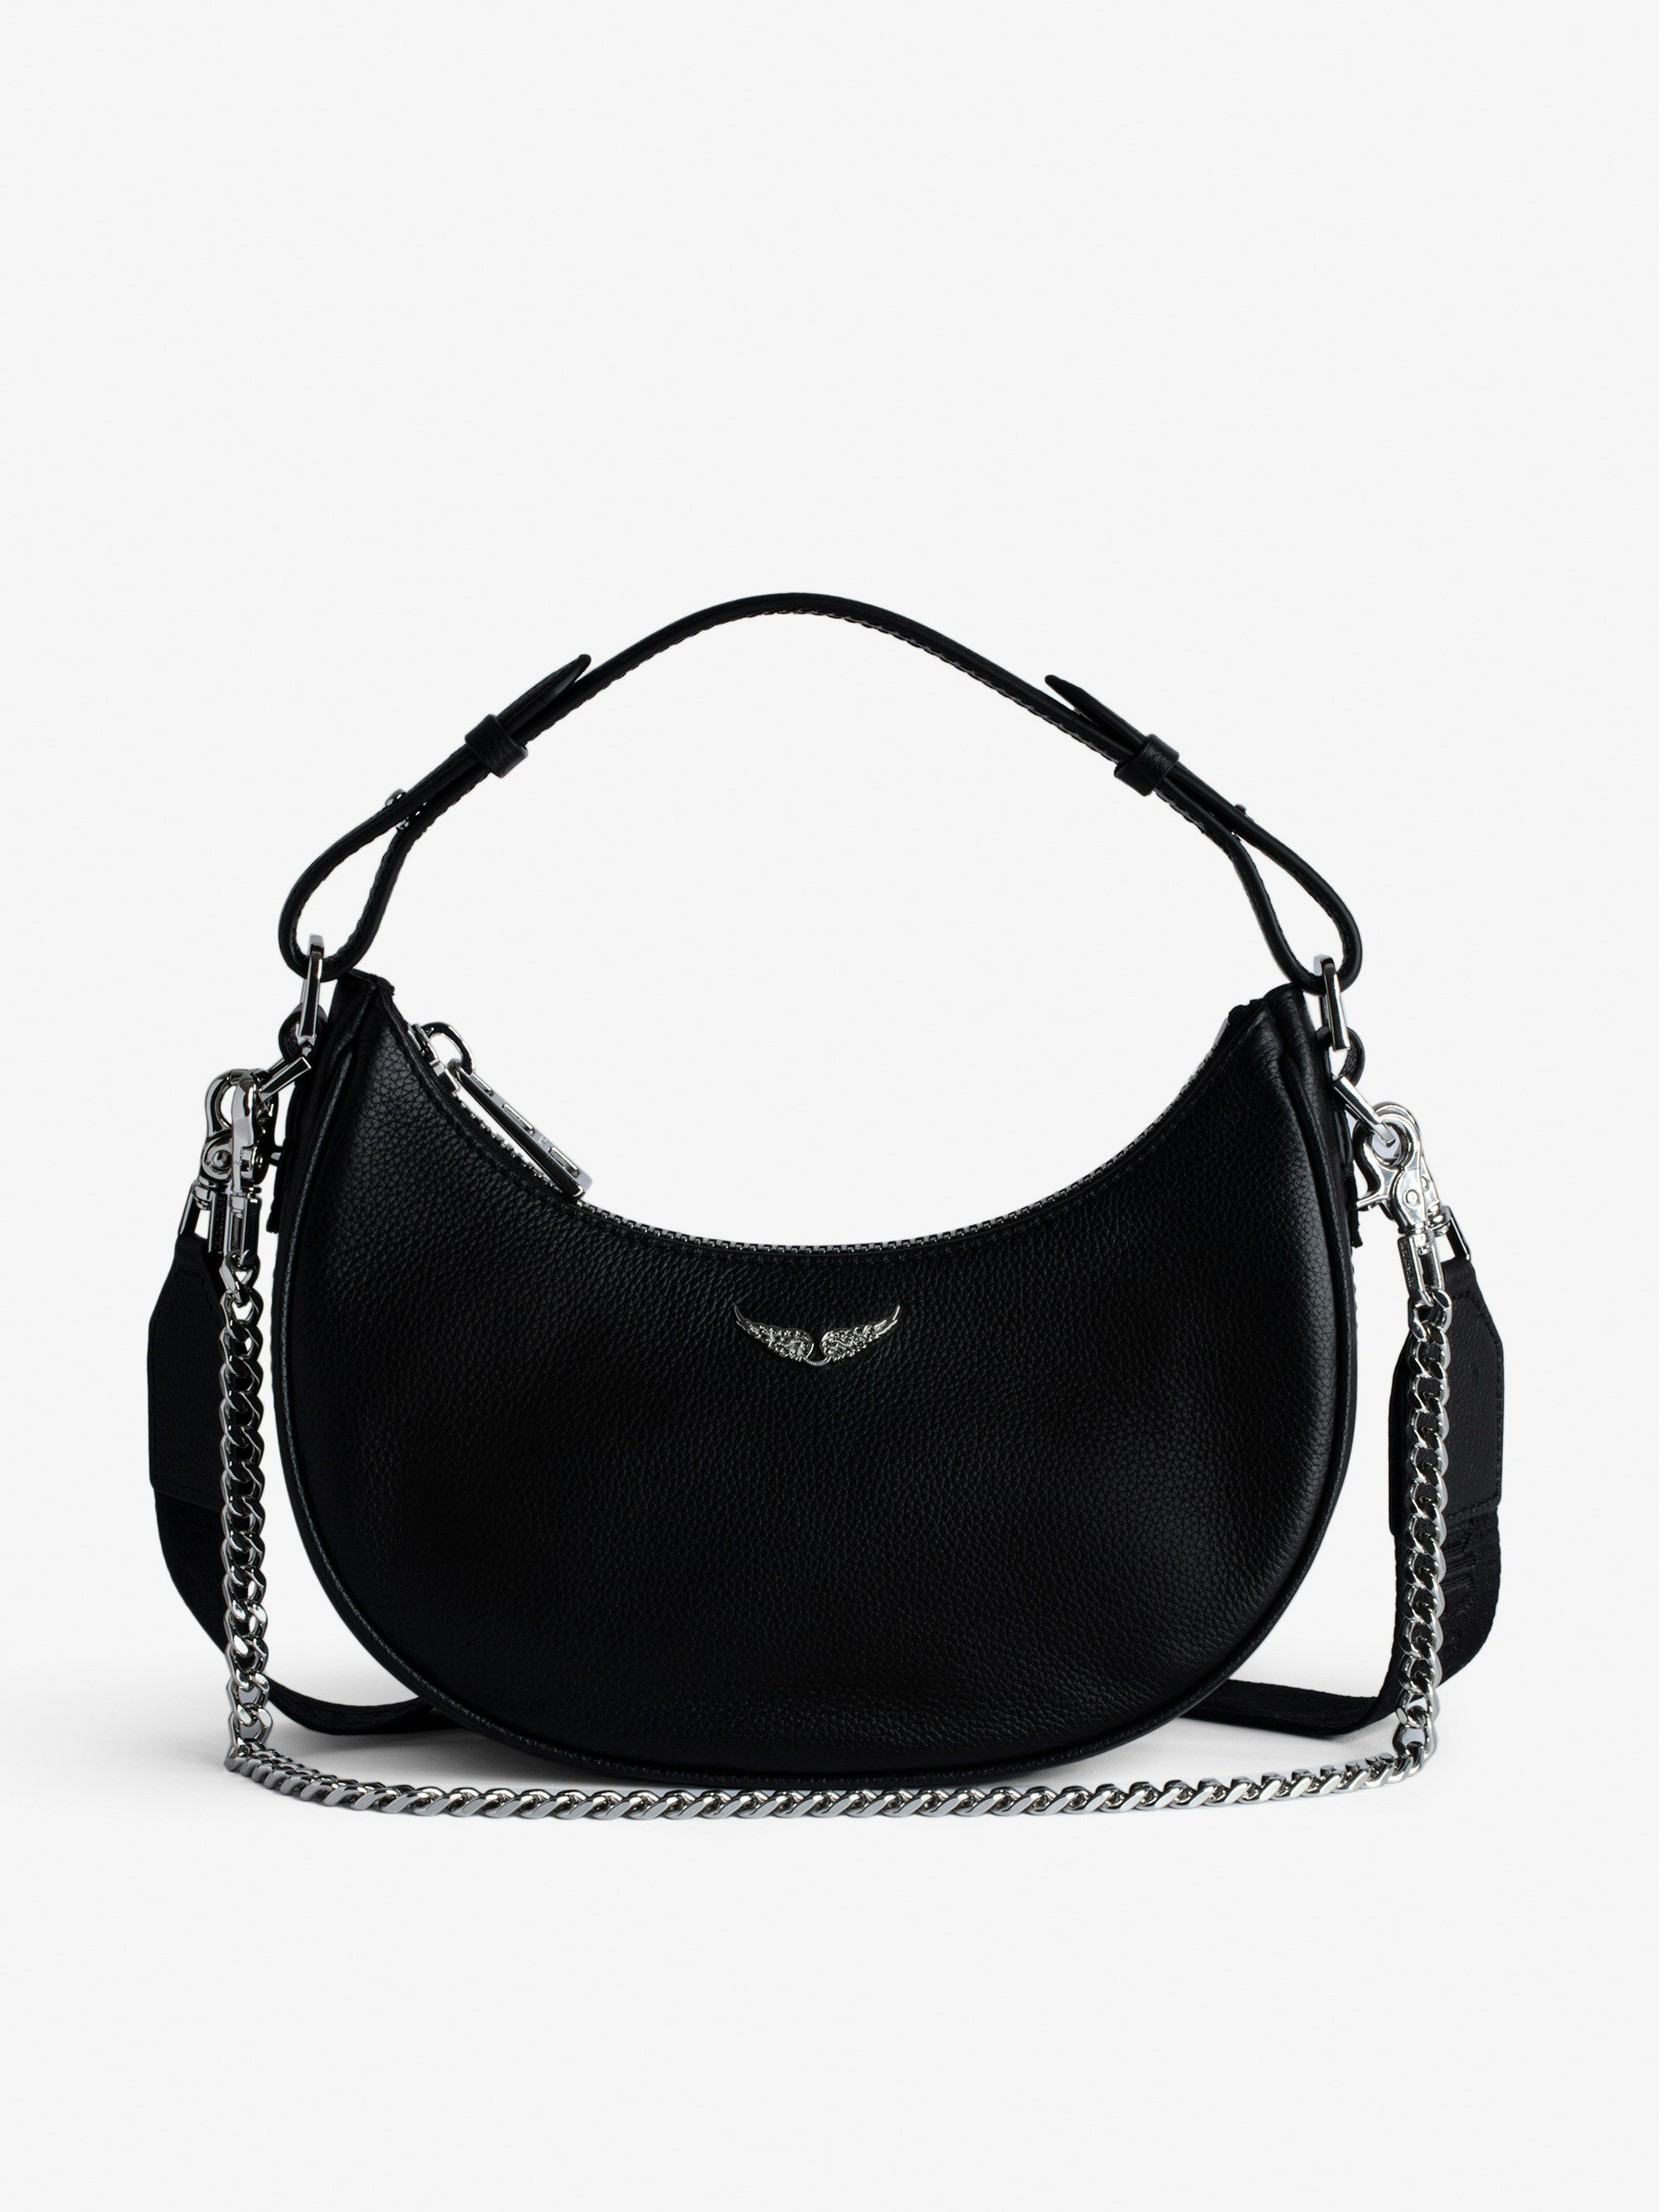 Tasche Moonrock - Halbmondtasche für Damen aus schwarzem genarbtem Leder mit kurzem Henkel, Schulterriemen, Kette und Signature-Flügeln.